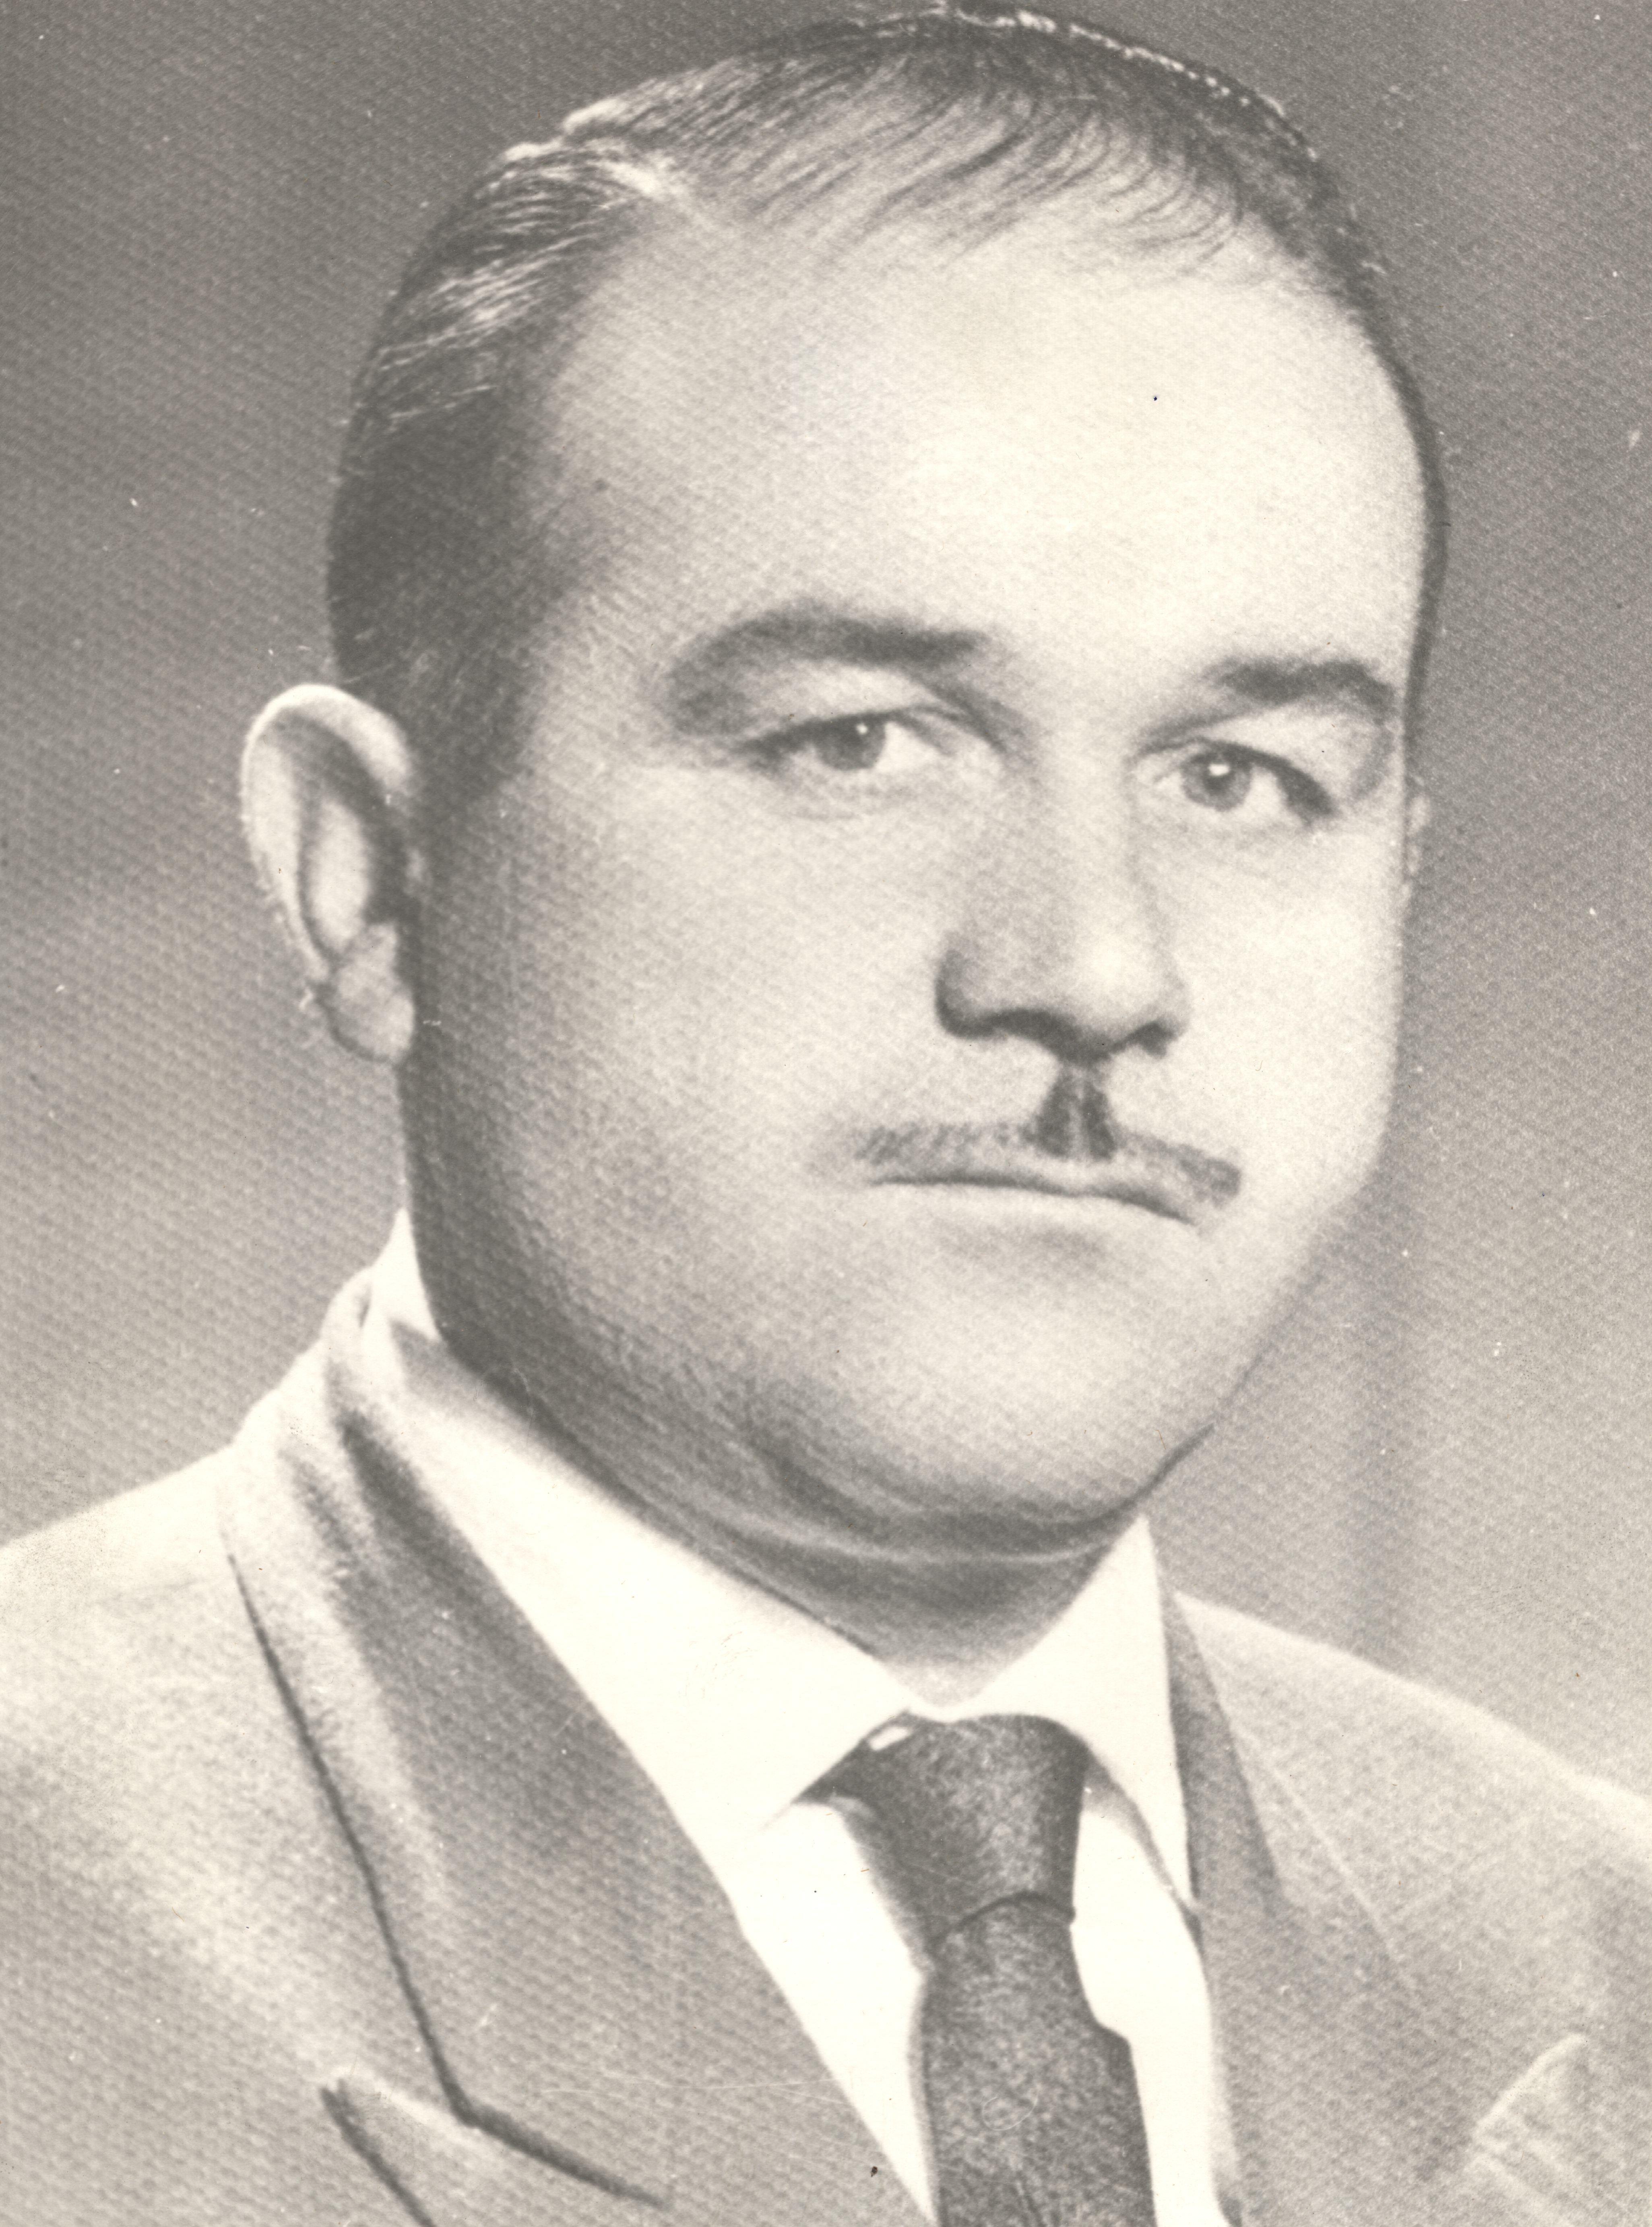 Mustafa ÜNAL (1963-1973